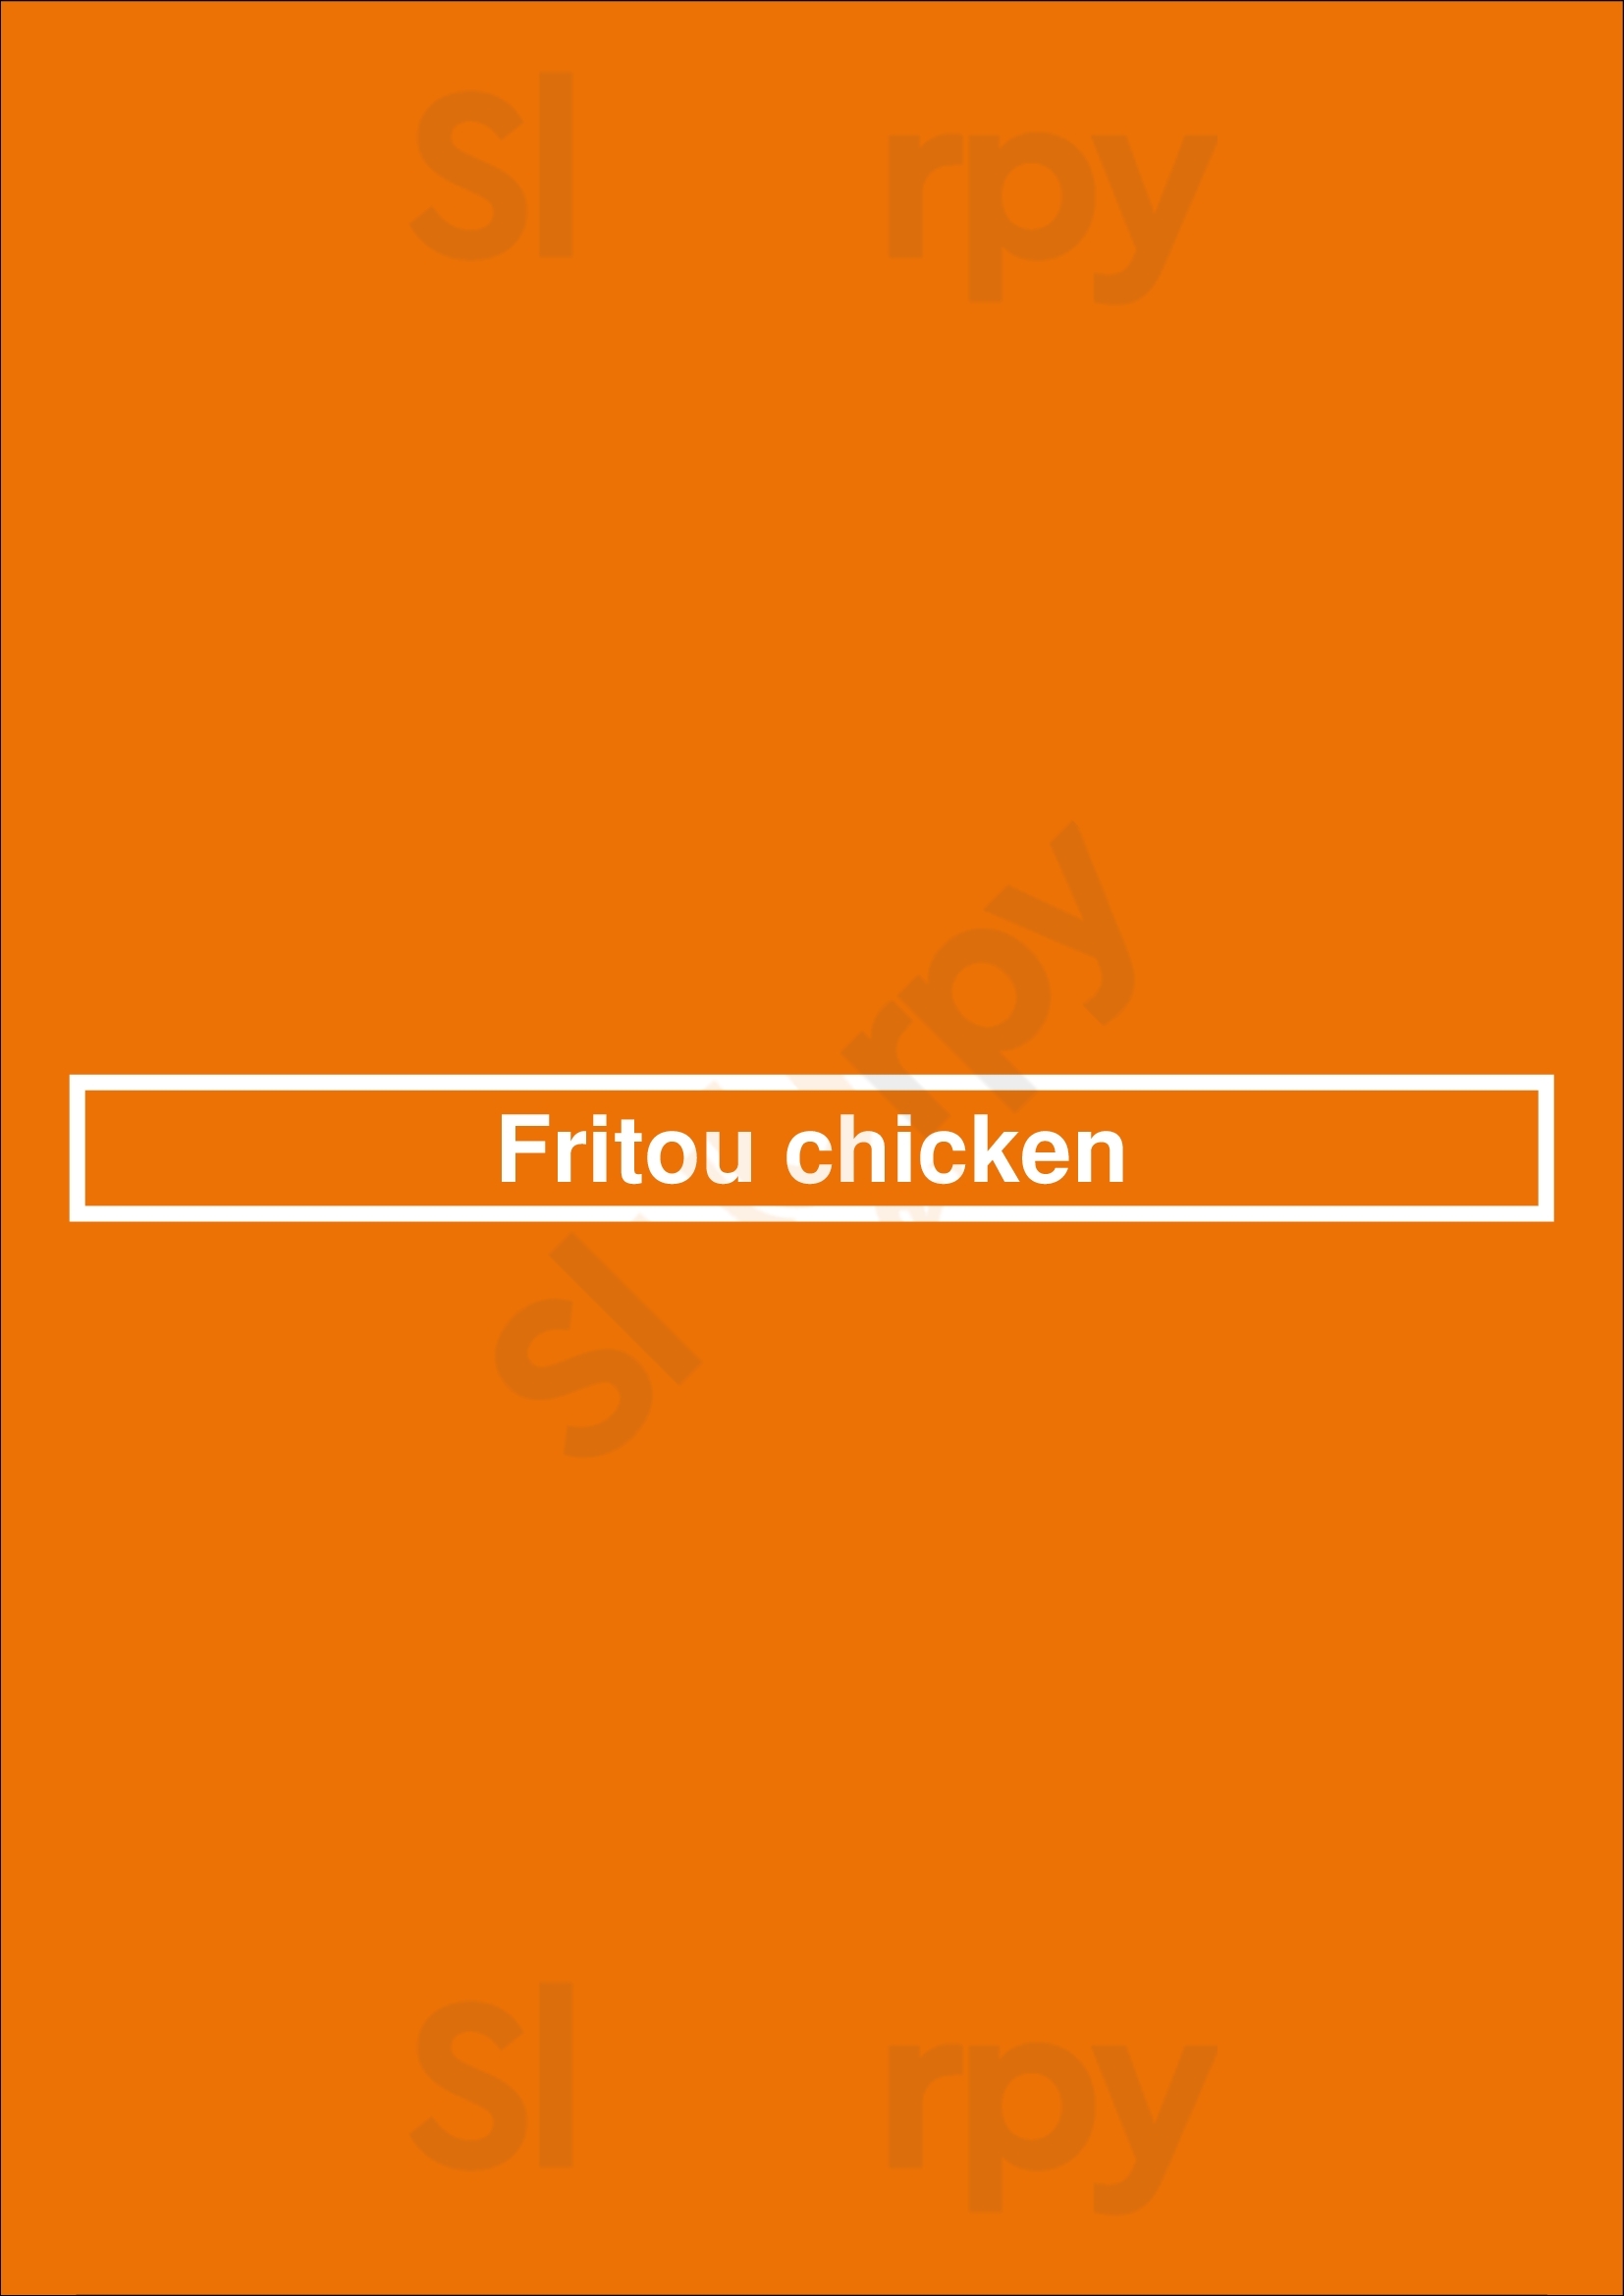 Fritou Chicken Mississauga Menu - 1